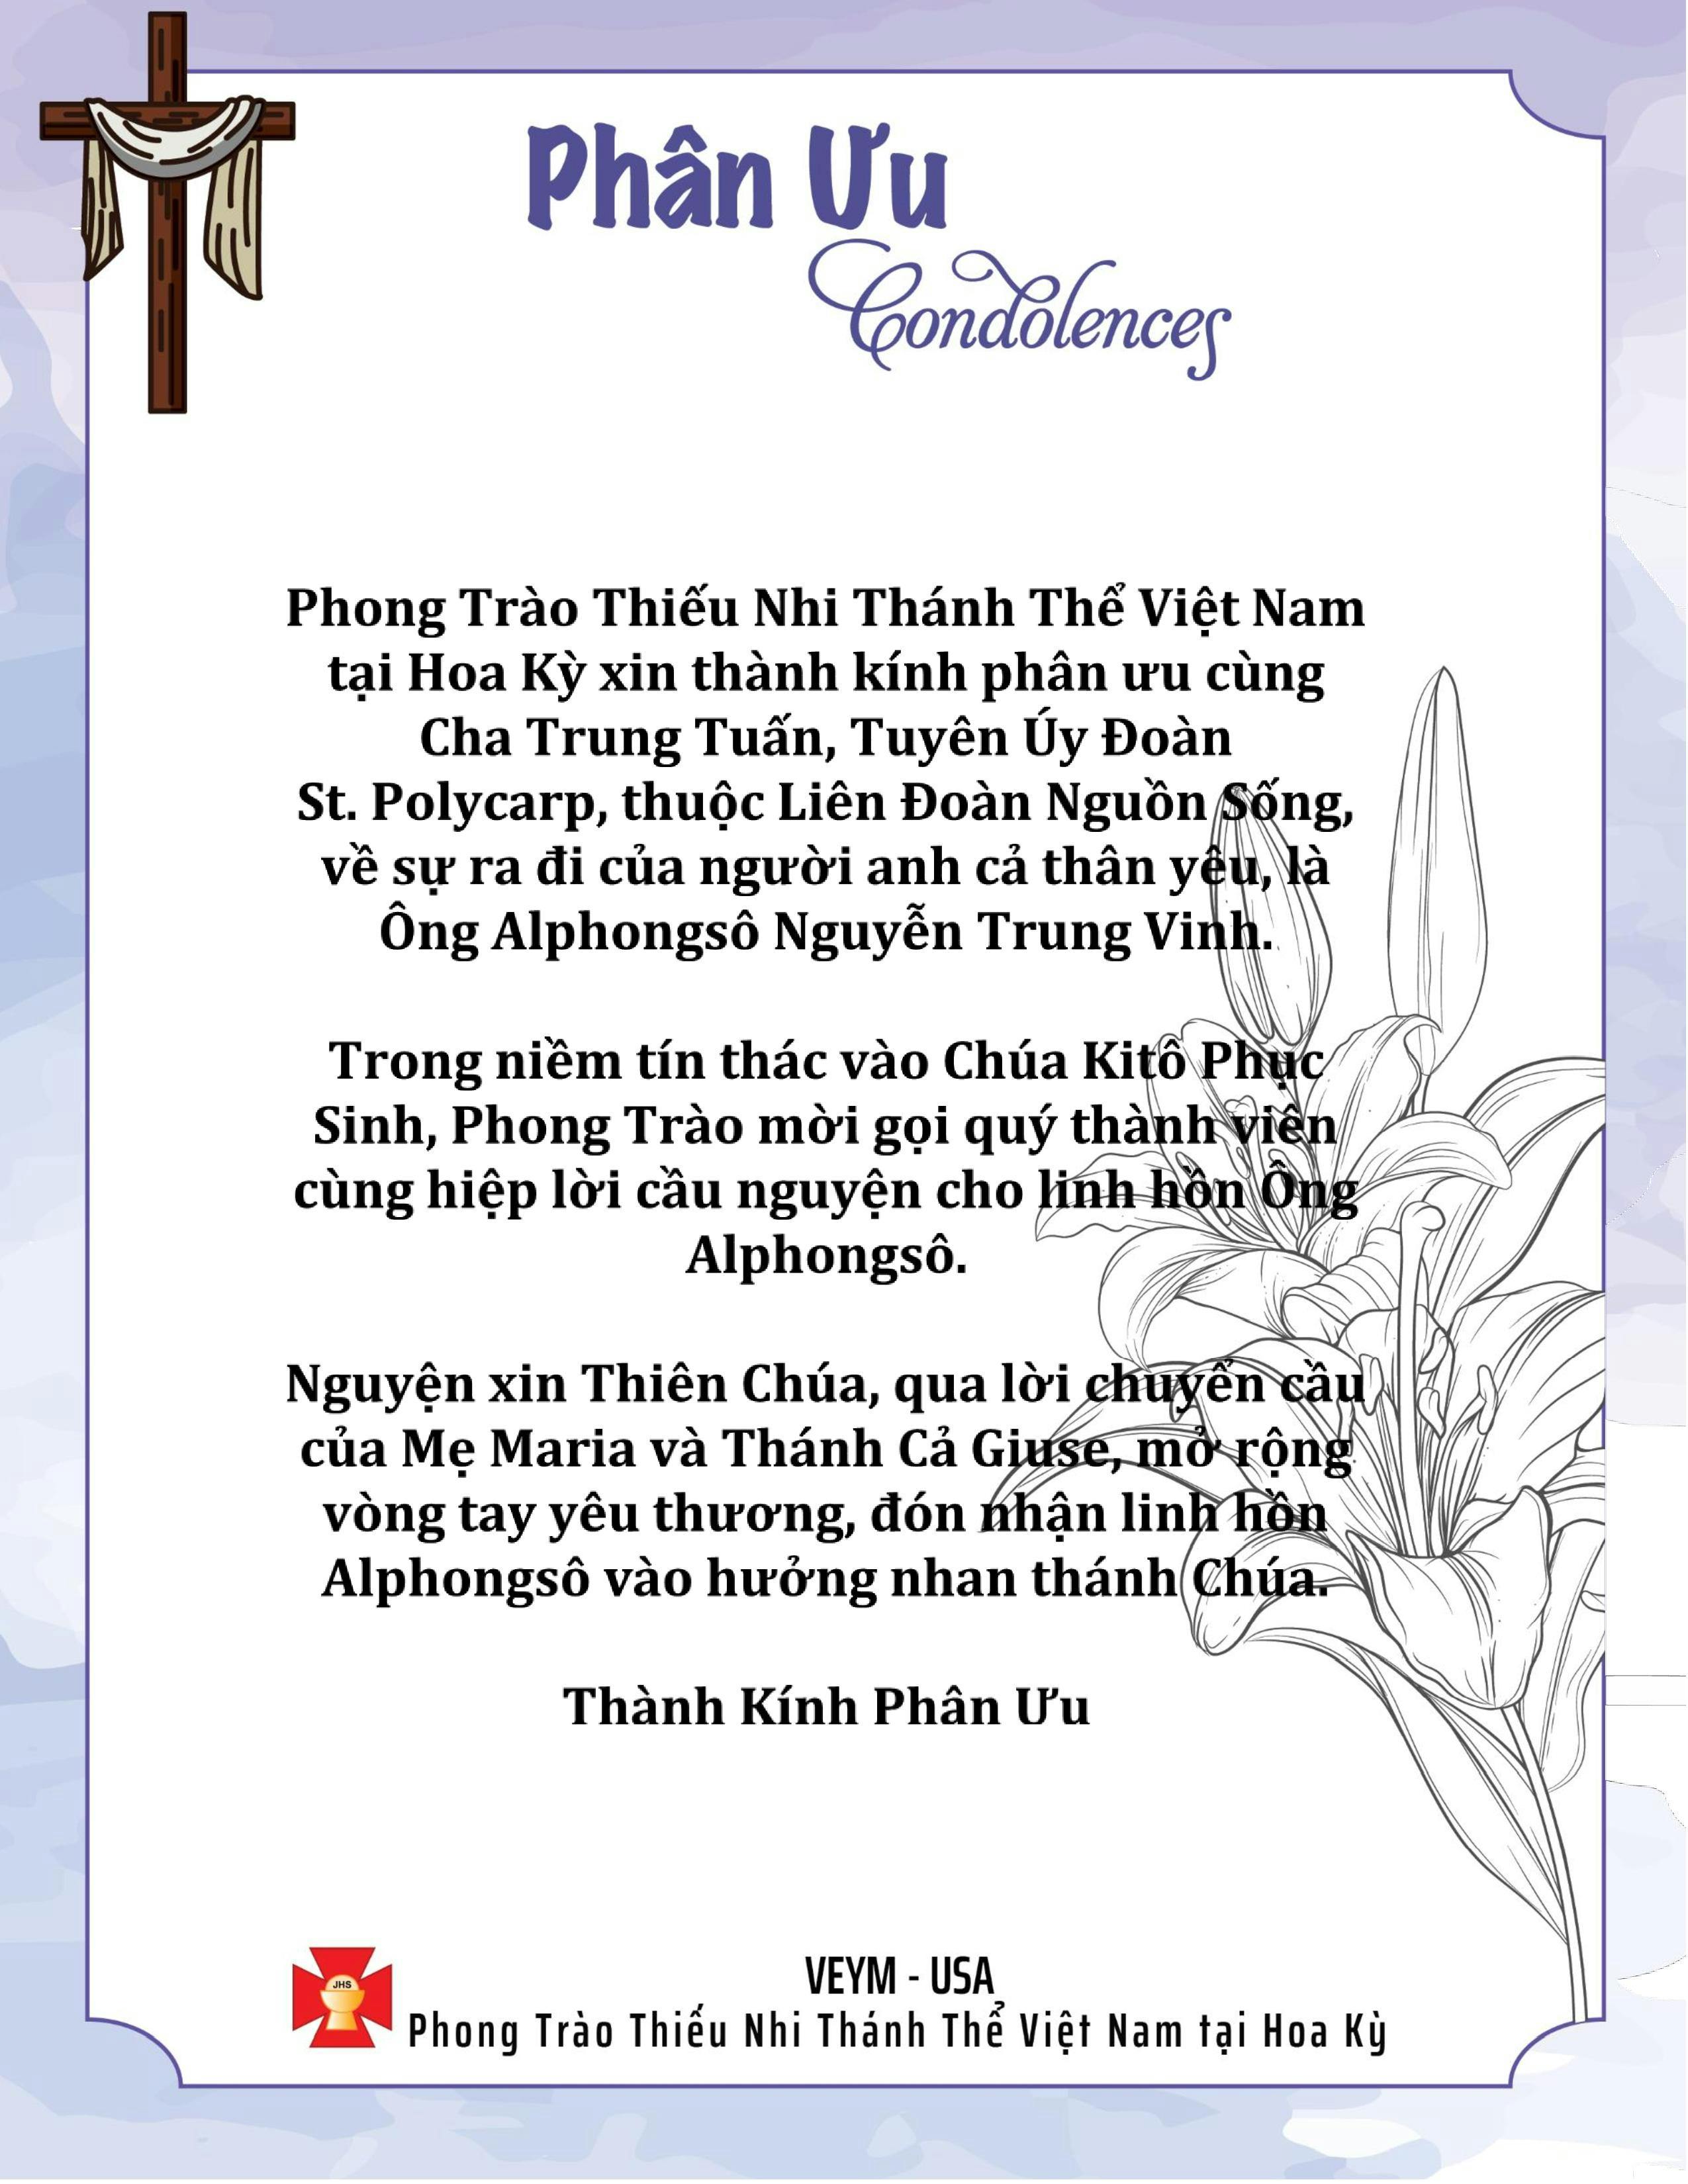 Pray for Linh Hồn Alphongsô Nguyễn Trung Vinh - Thành Kính Phân Ưu